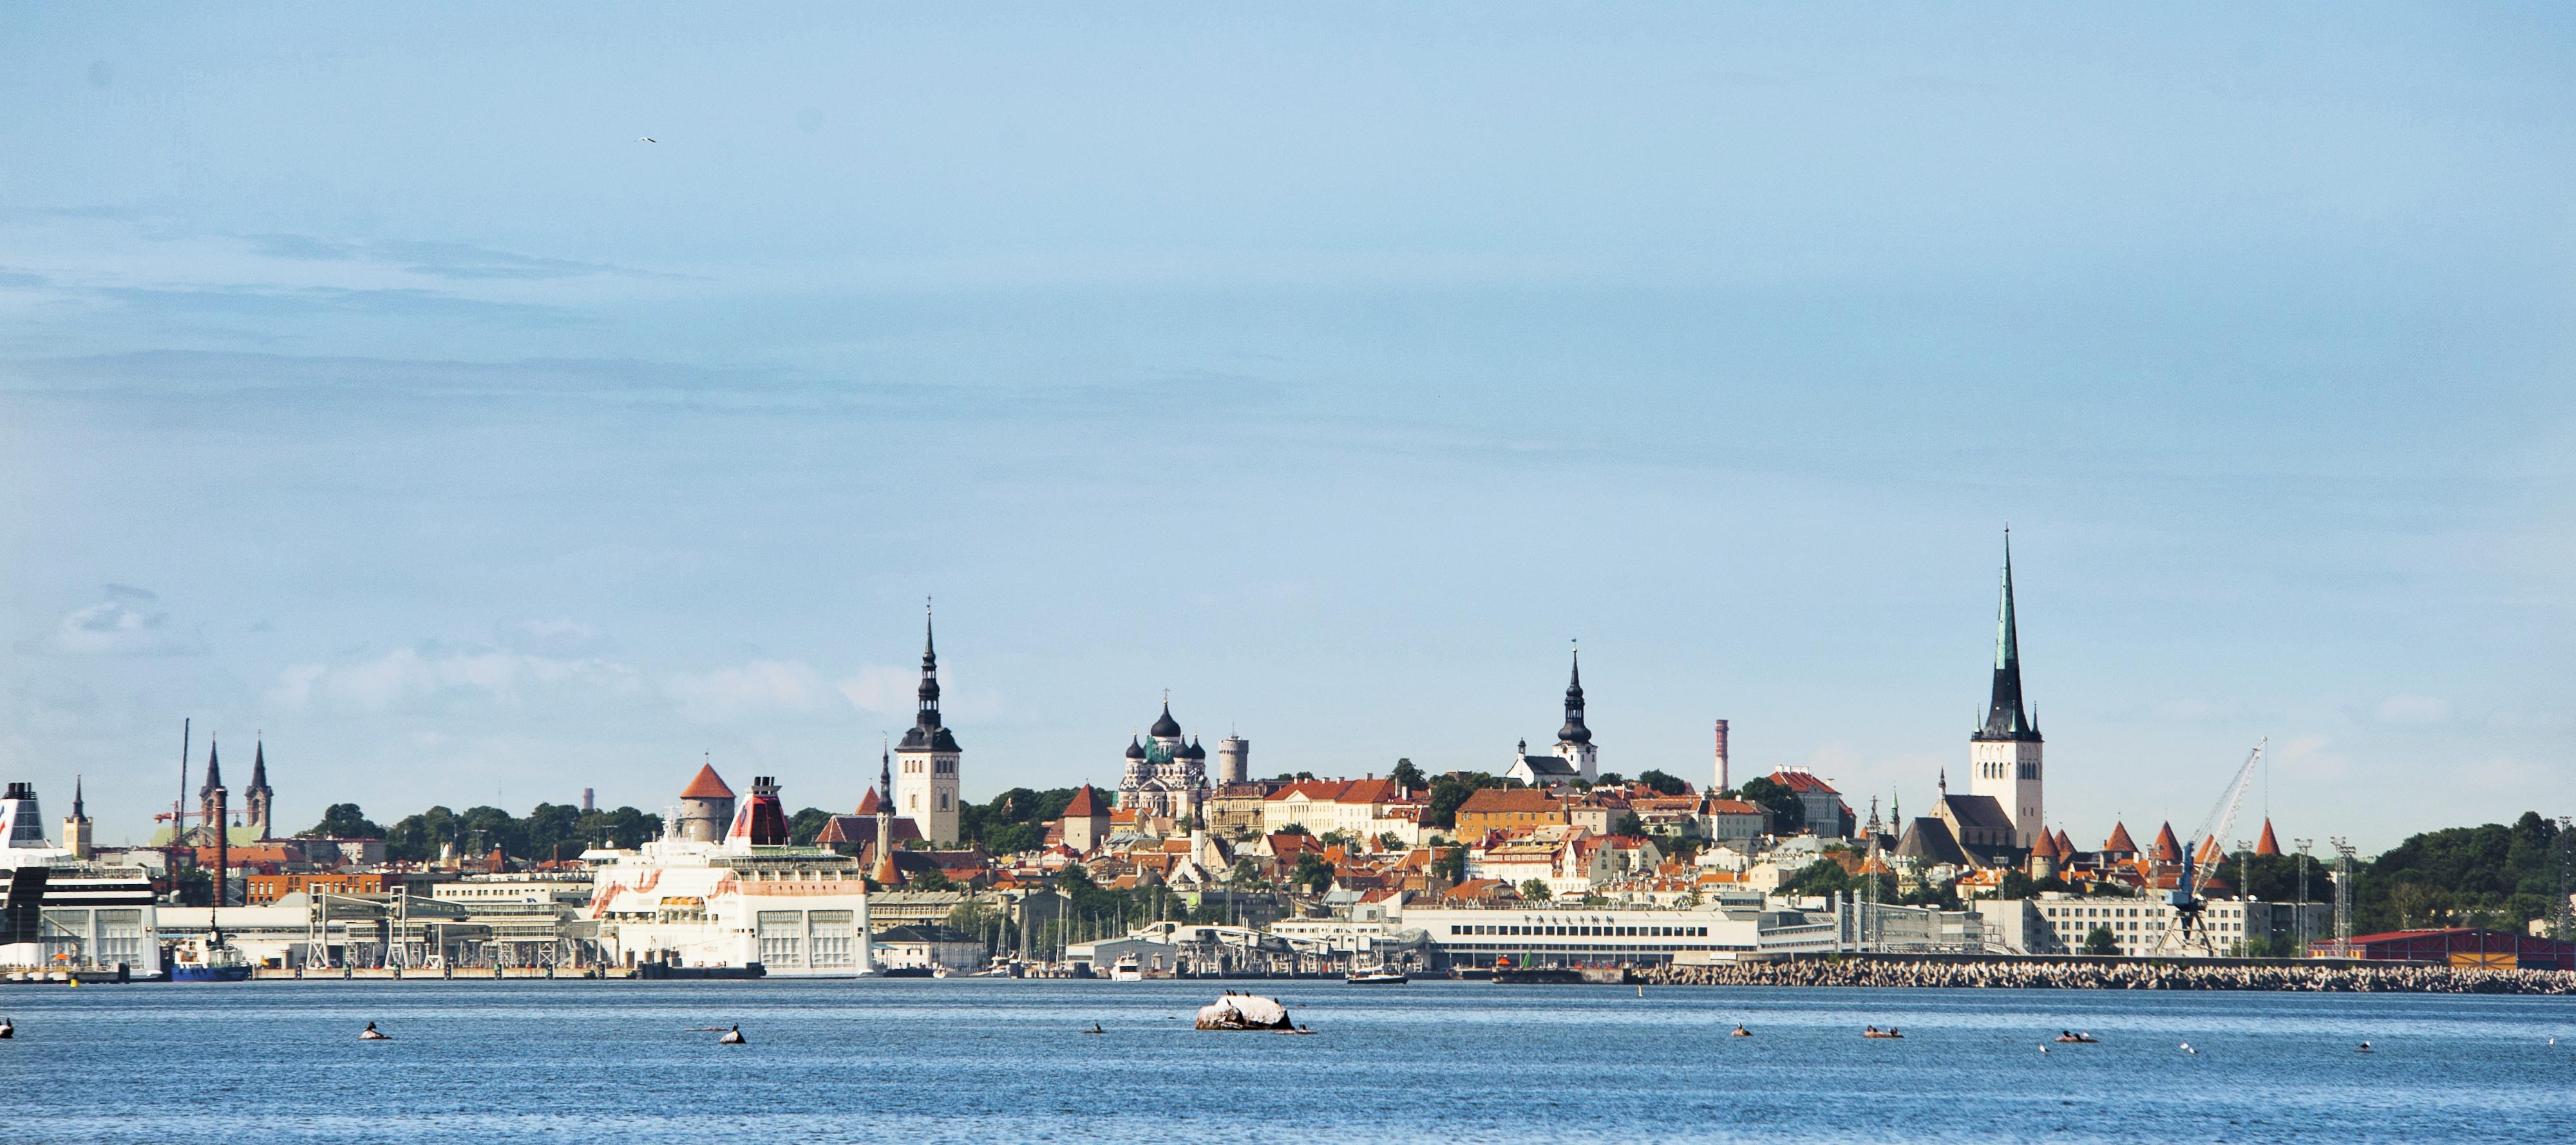 Tallinn, Estonia - Port stop on Baltics Cruise